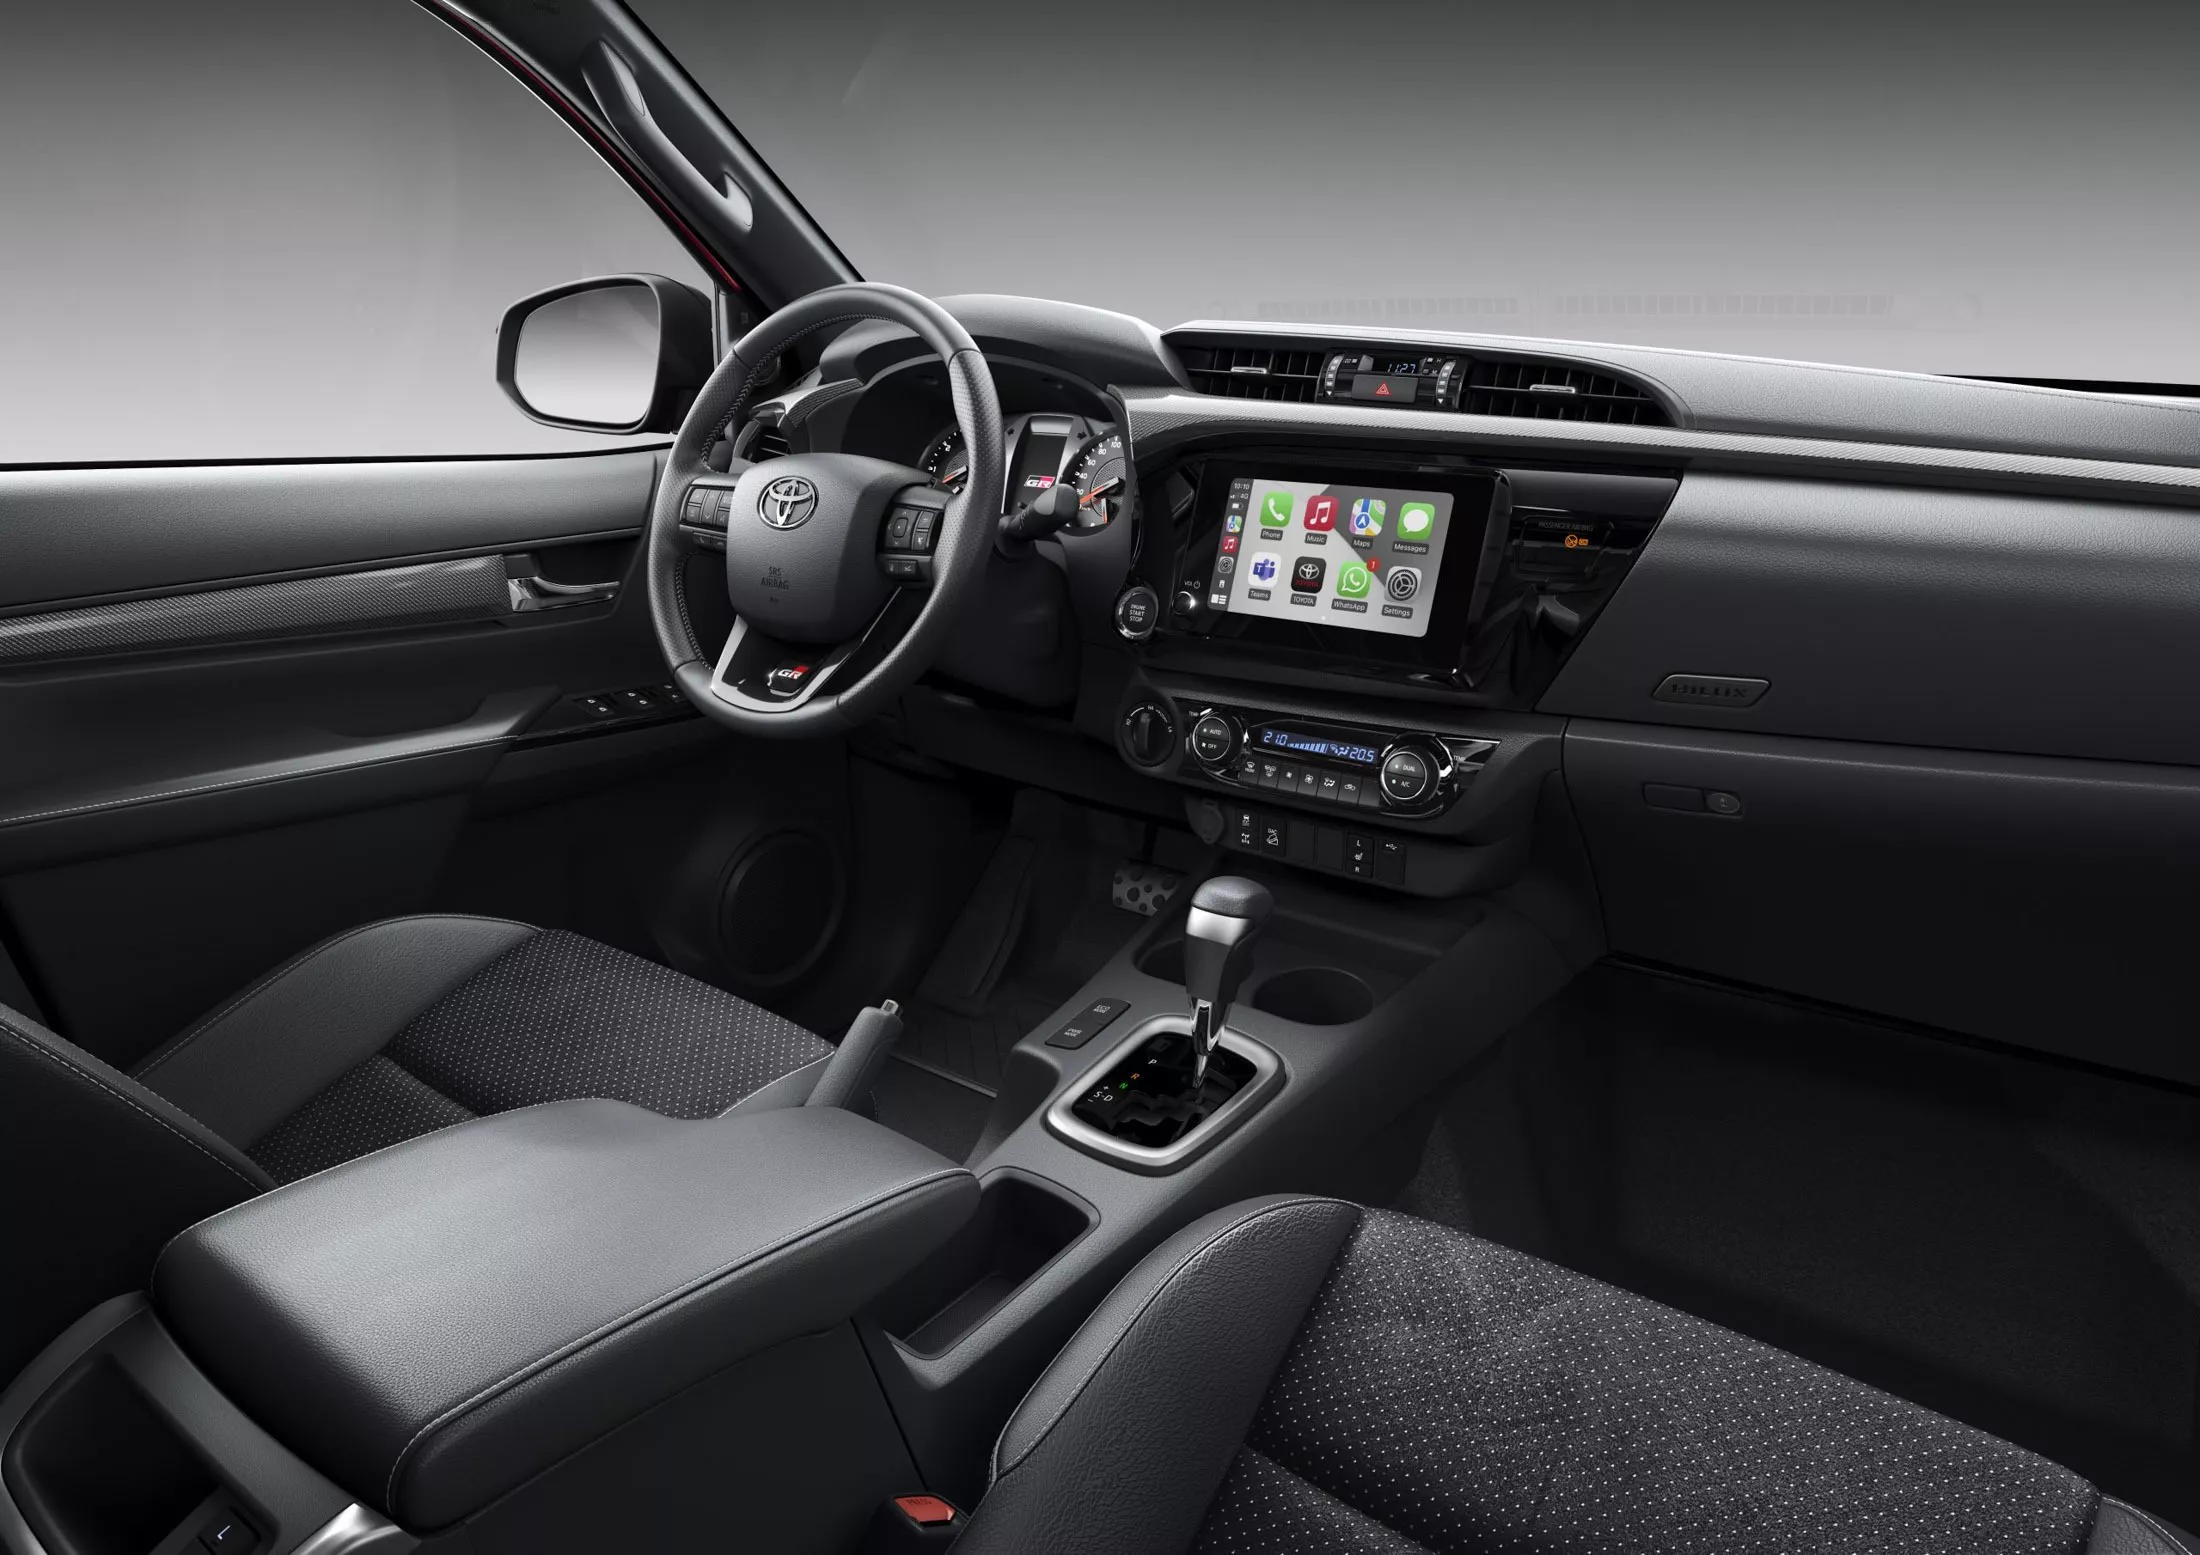 Toyota Hilux GR Sport II lộ diện với nhiều nâng cấp mới